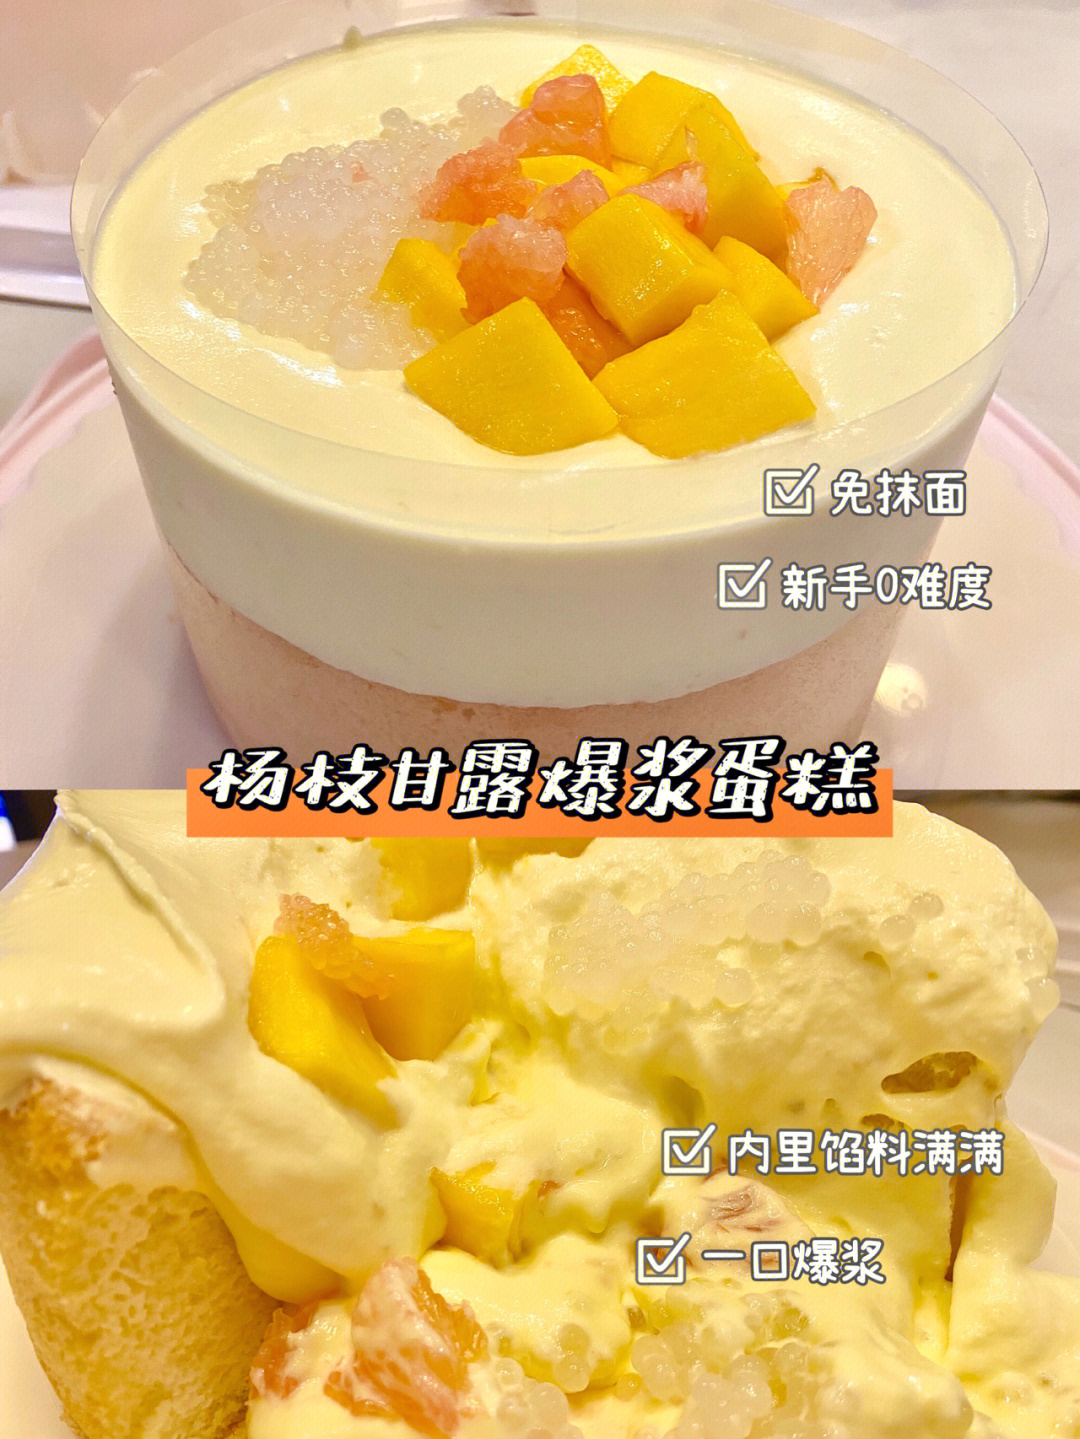 杨枝甘露爆浆蛋糕描述图片